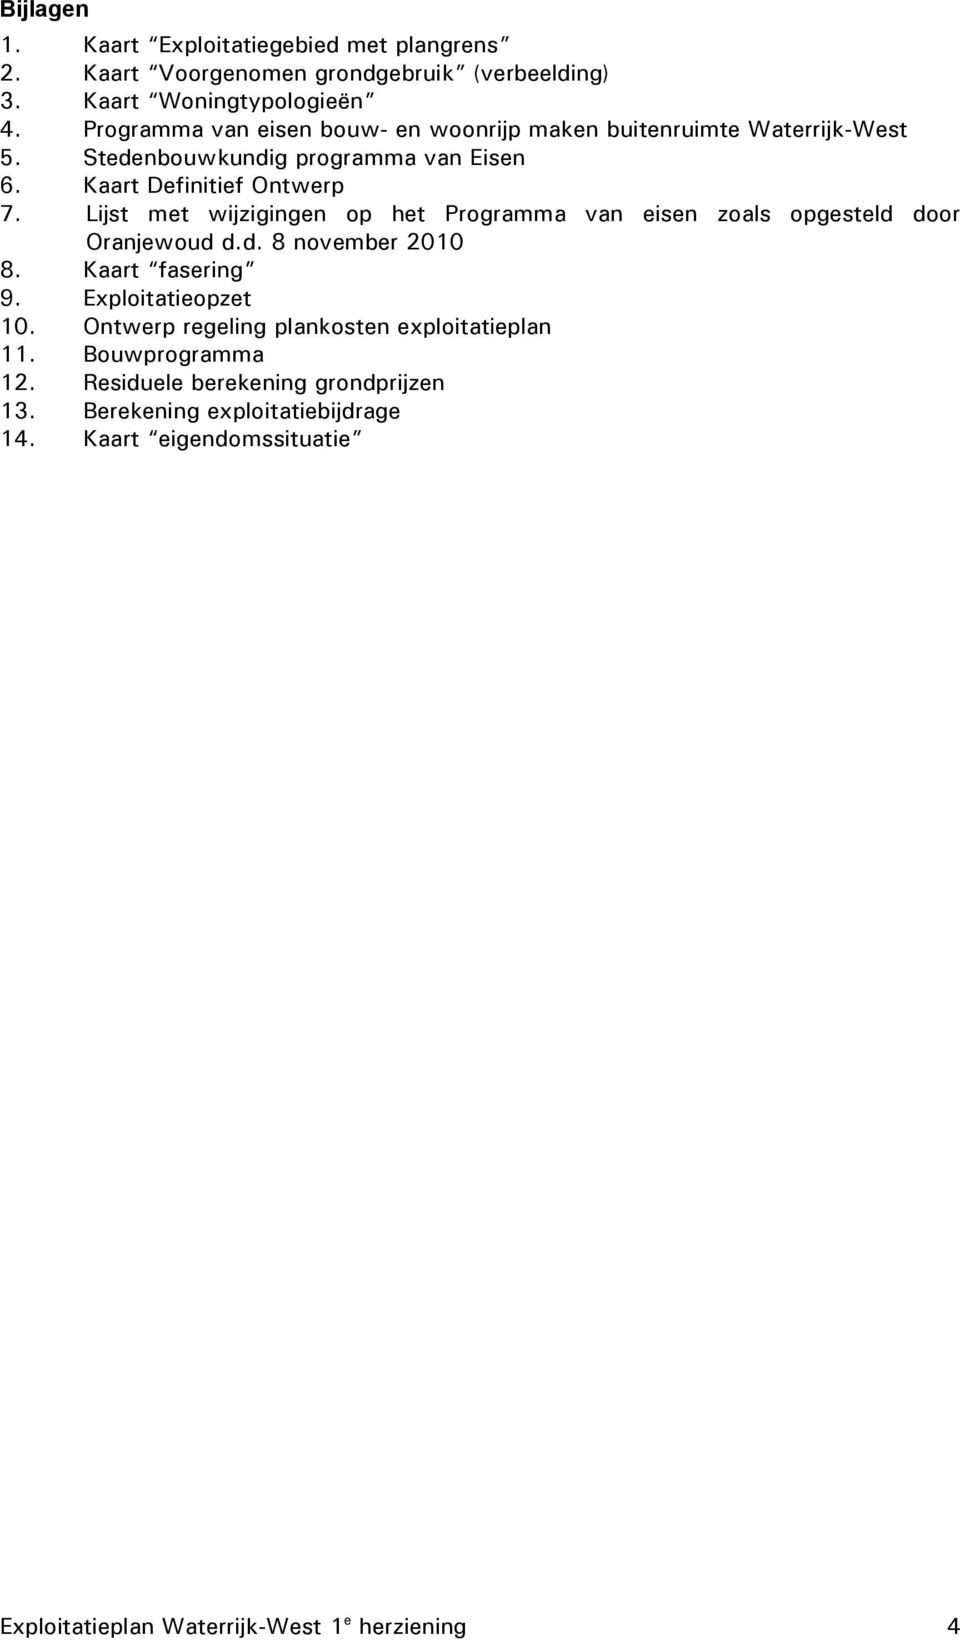 Lijst met wijzigingen op het Programma van eisen zoals opgesteld door Oranjewoud d.d. 8 november 2010 8. Kaart fasering 9. Exploitatieopzet 10.